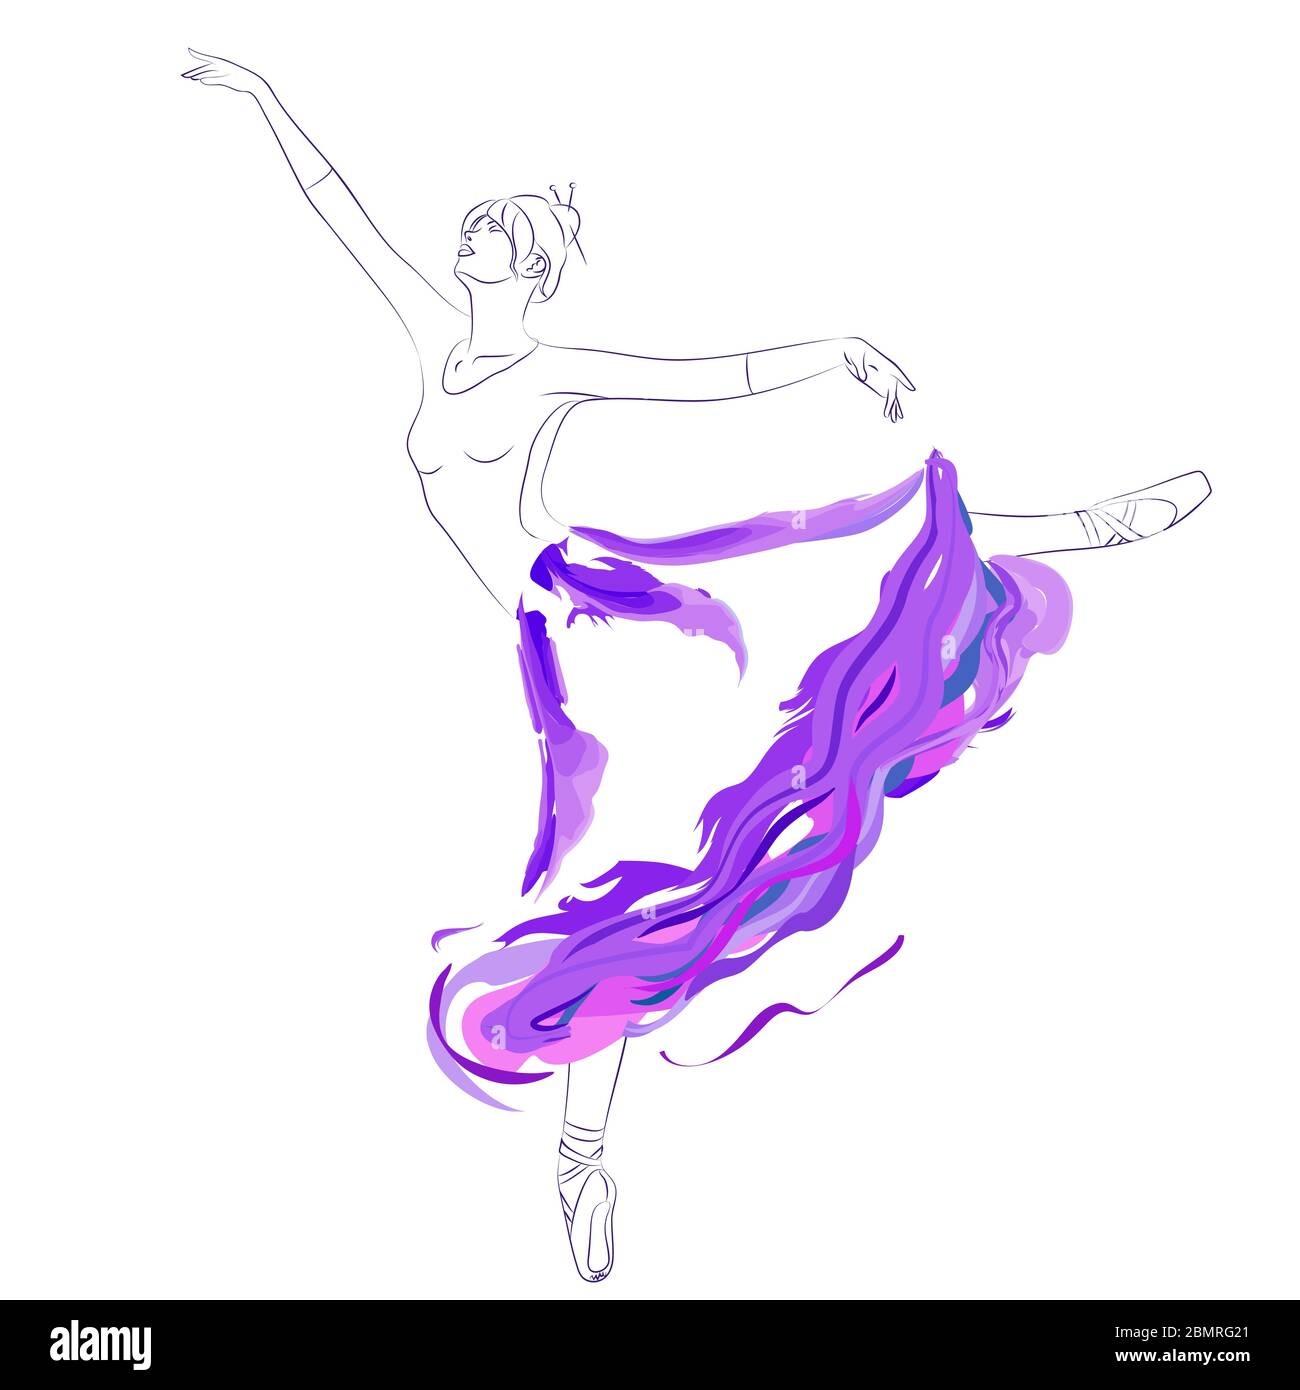 Illustration vectorielle de la jeune danseuse de ballet dansant avec élégance dans la longue